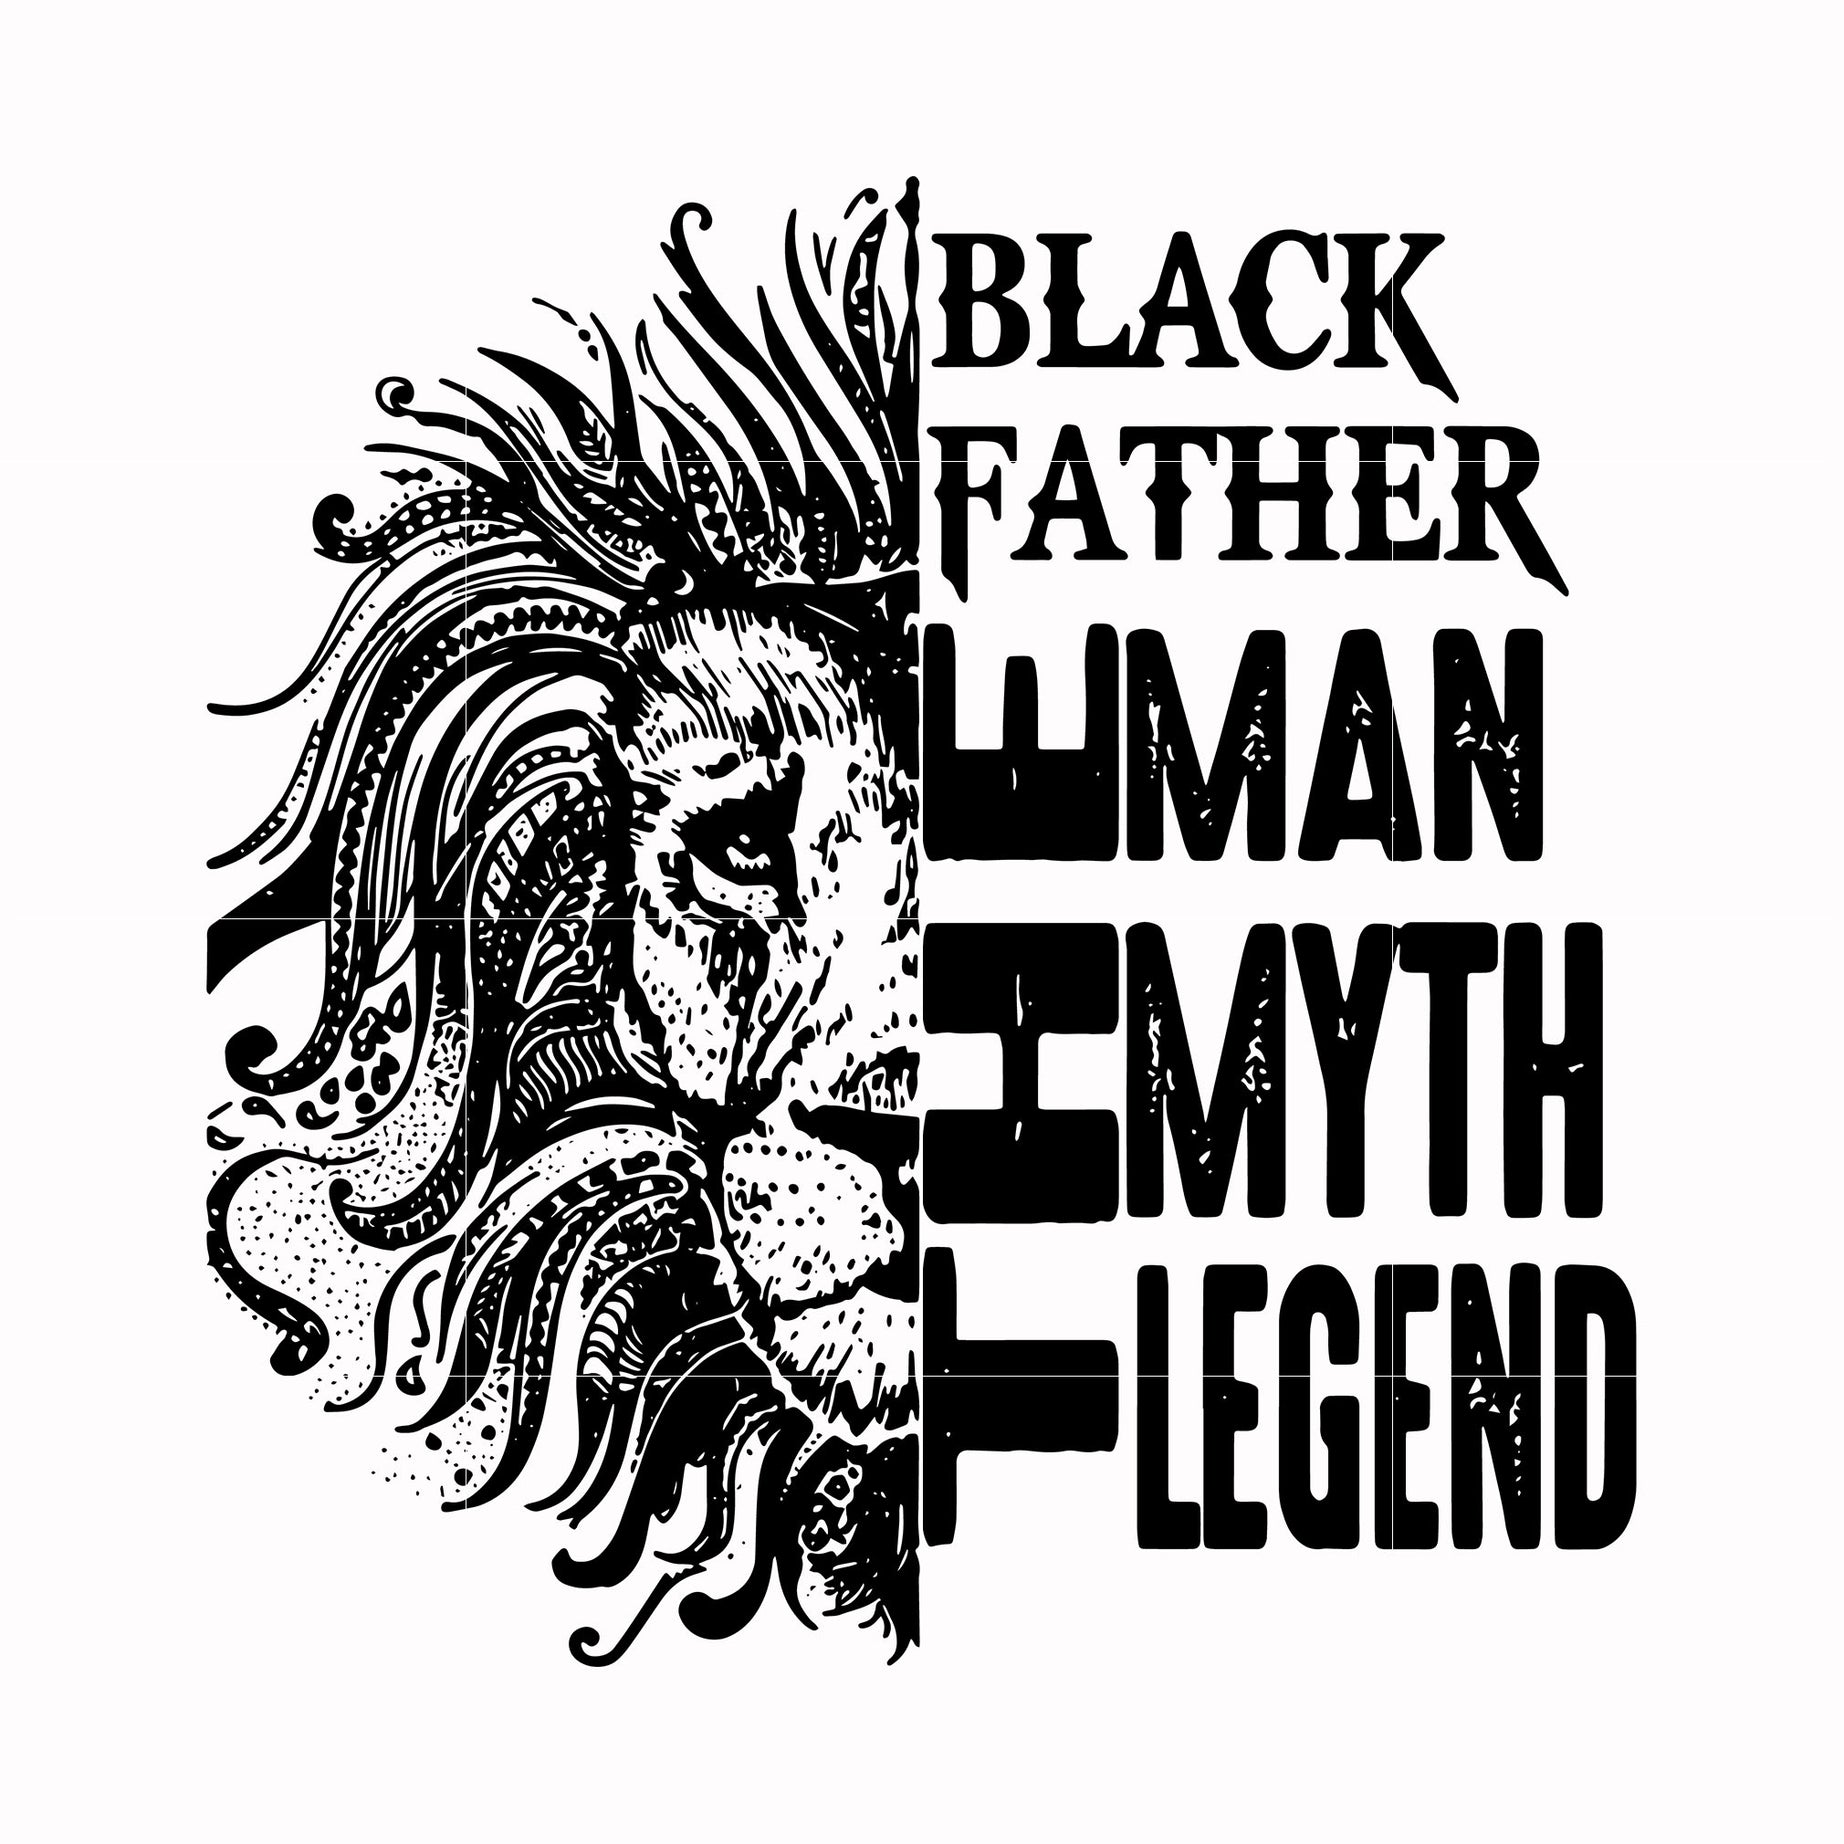 Black father the man myth legend svg, png, dxf, eps, digital file FTD49